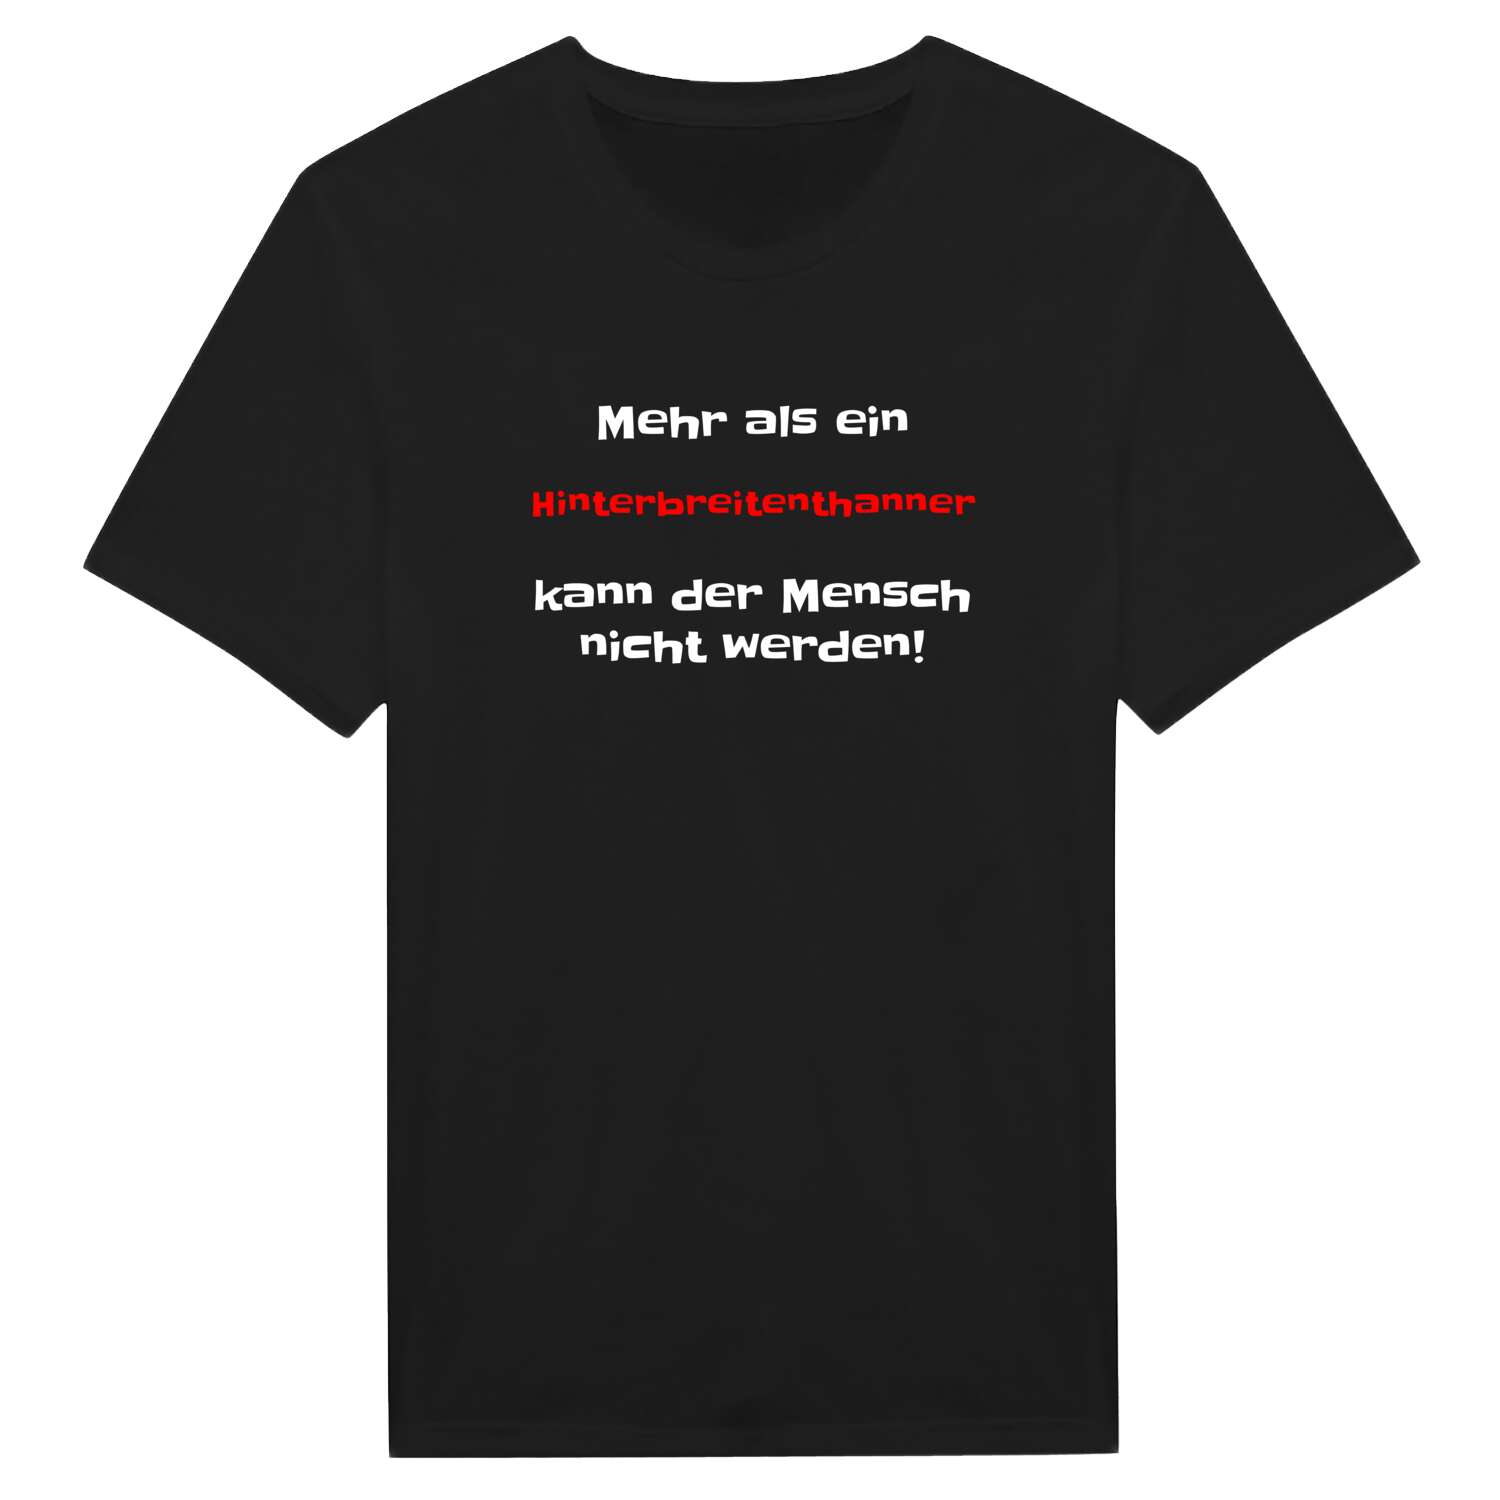 Hinterbreitenthann T-Shirt »Mehr als ein«